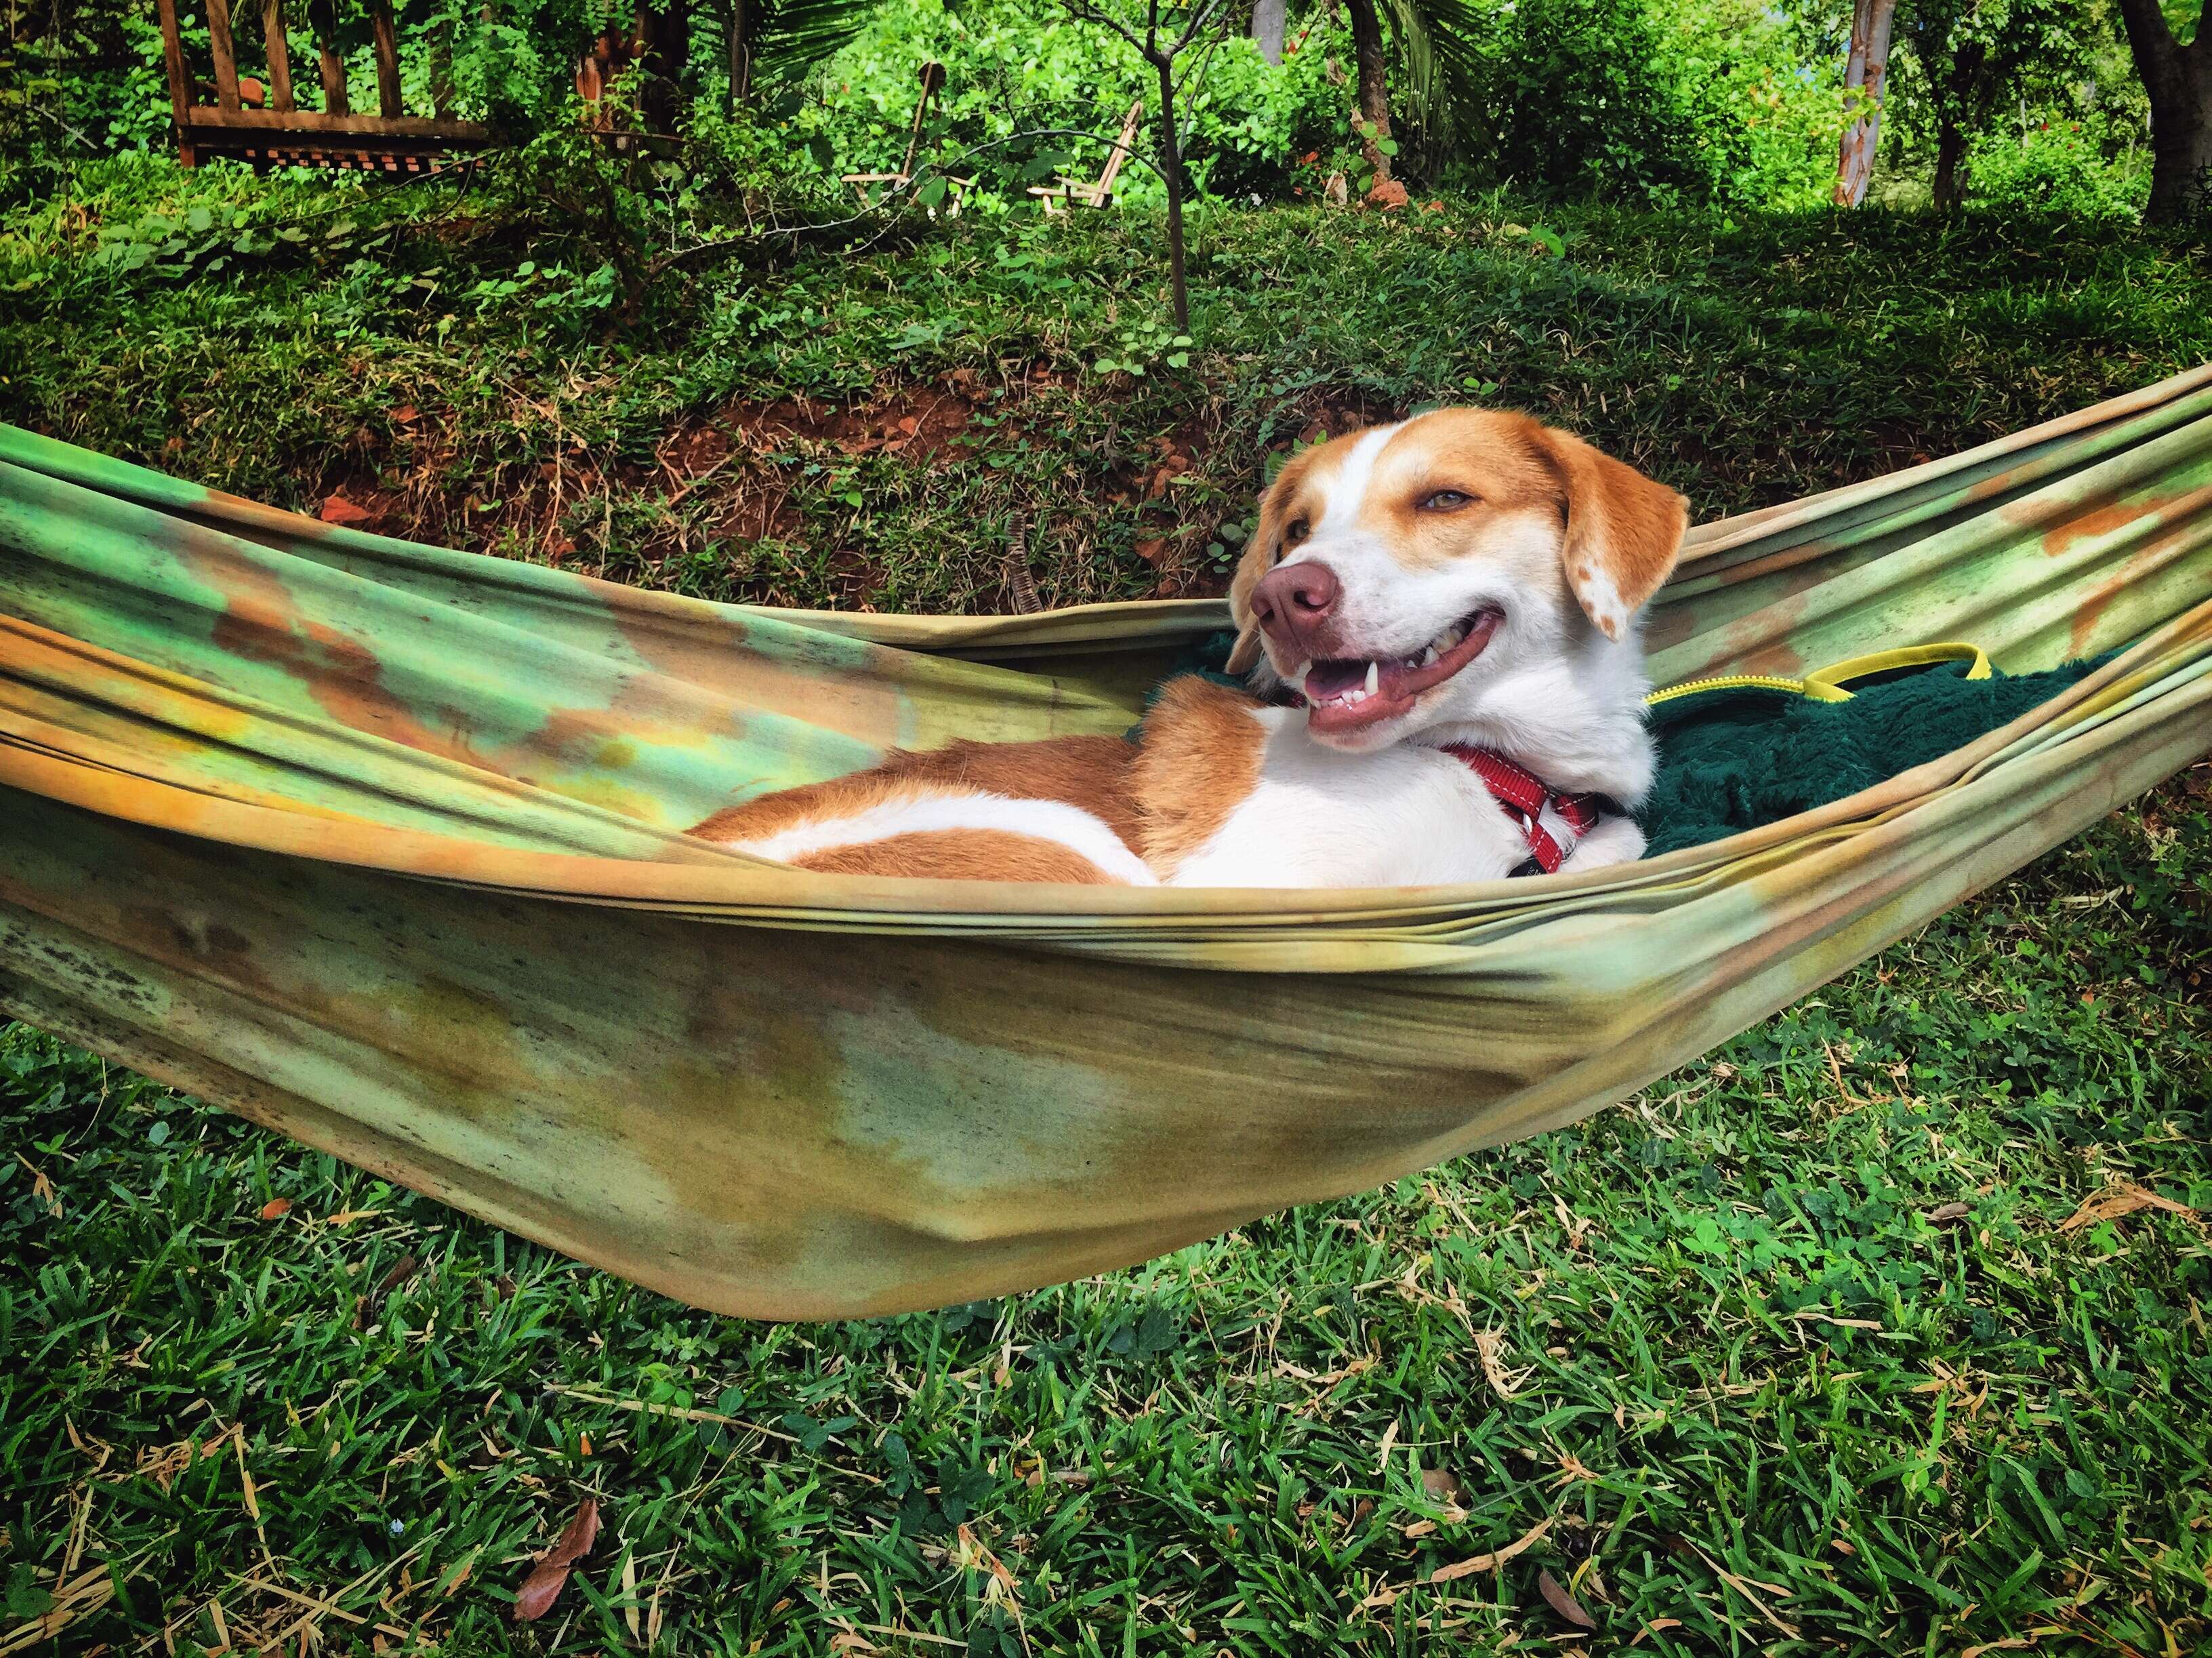 Dog lying in hammock